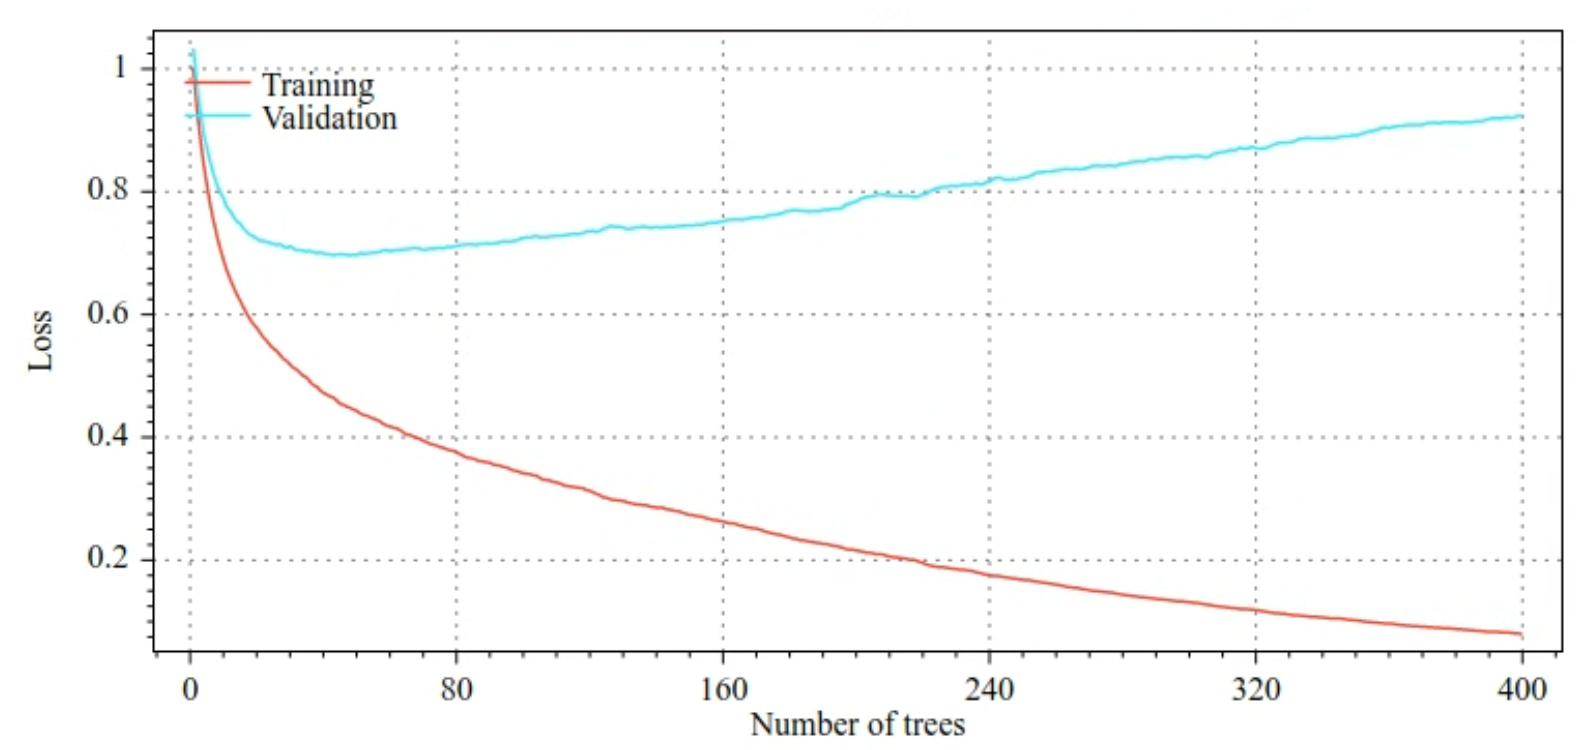 Karar ağaçlarının sayısına kıyasla eğitim kaybı ve doğrulama kaybı parselleri. Karar ağaçlarının sayısı arttıkça eğitim kaybı da kademeli olarak azalır. Ancak doğrulama kaybı yaklaşık 40 karar ağacına kadar azalır. 40&#39;tan fazla karar ağacıyla doğrulama kaybı aslında artar. 400 karar ağacıyla eğitim kaybı ve doğrulama kaybı arasında dev bir fark vardır.